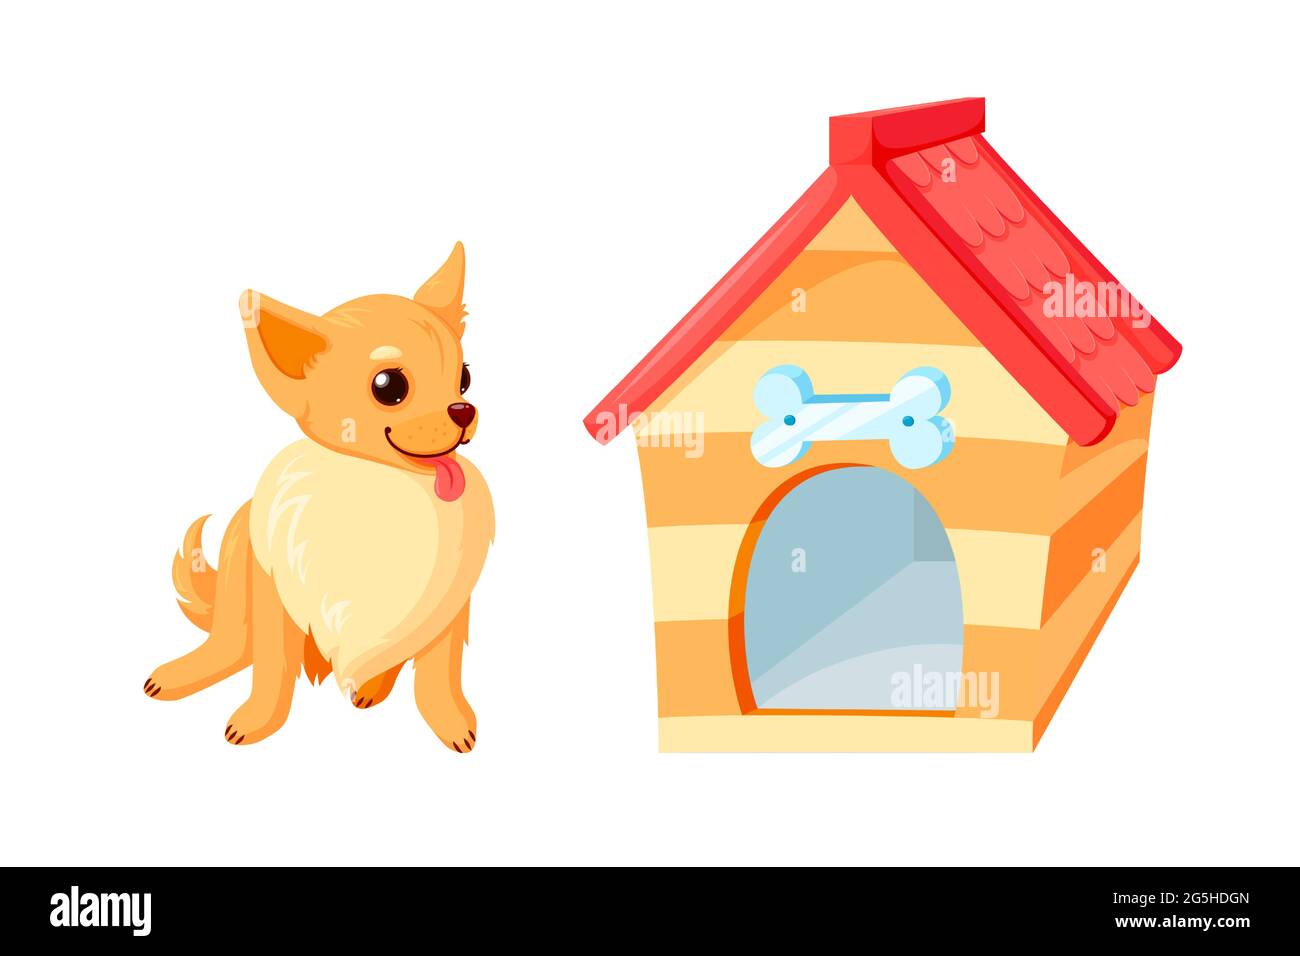 Chihuahua Hund und Zwinger mit Schale. holzhaus mit rotem Dach isoliert auf weißem Hintergrund. Vektor-Illustration in niedlichen Cartoon-Stil Stock Vektor